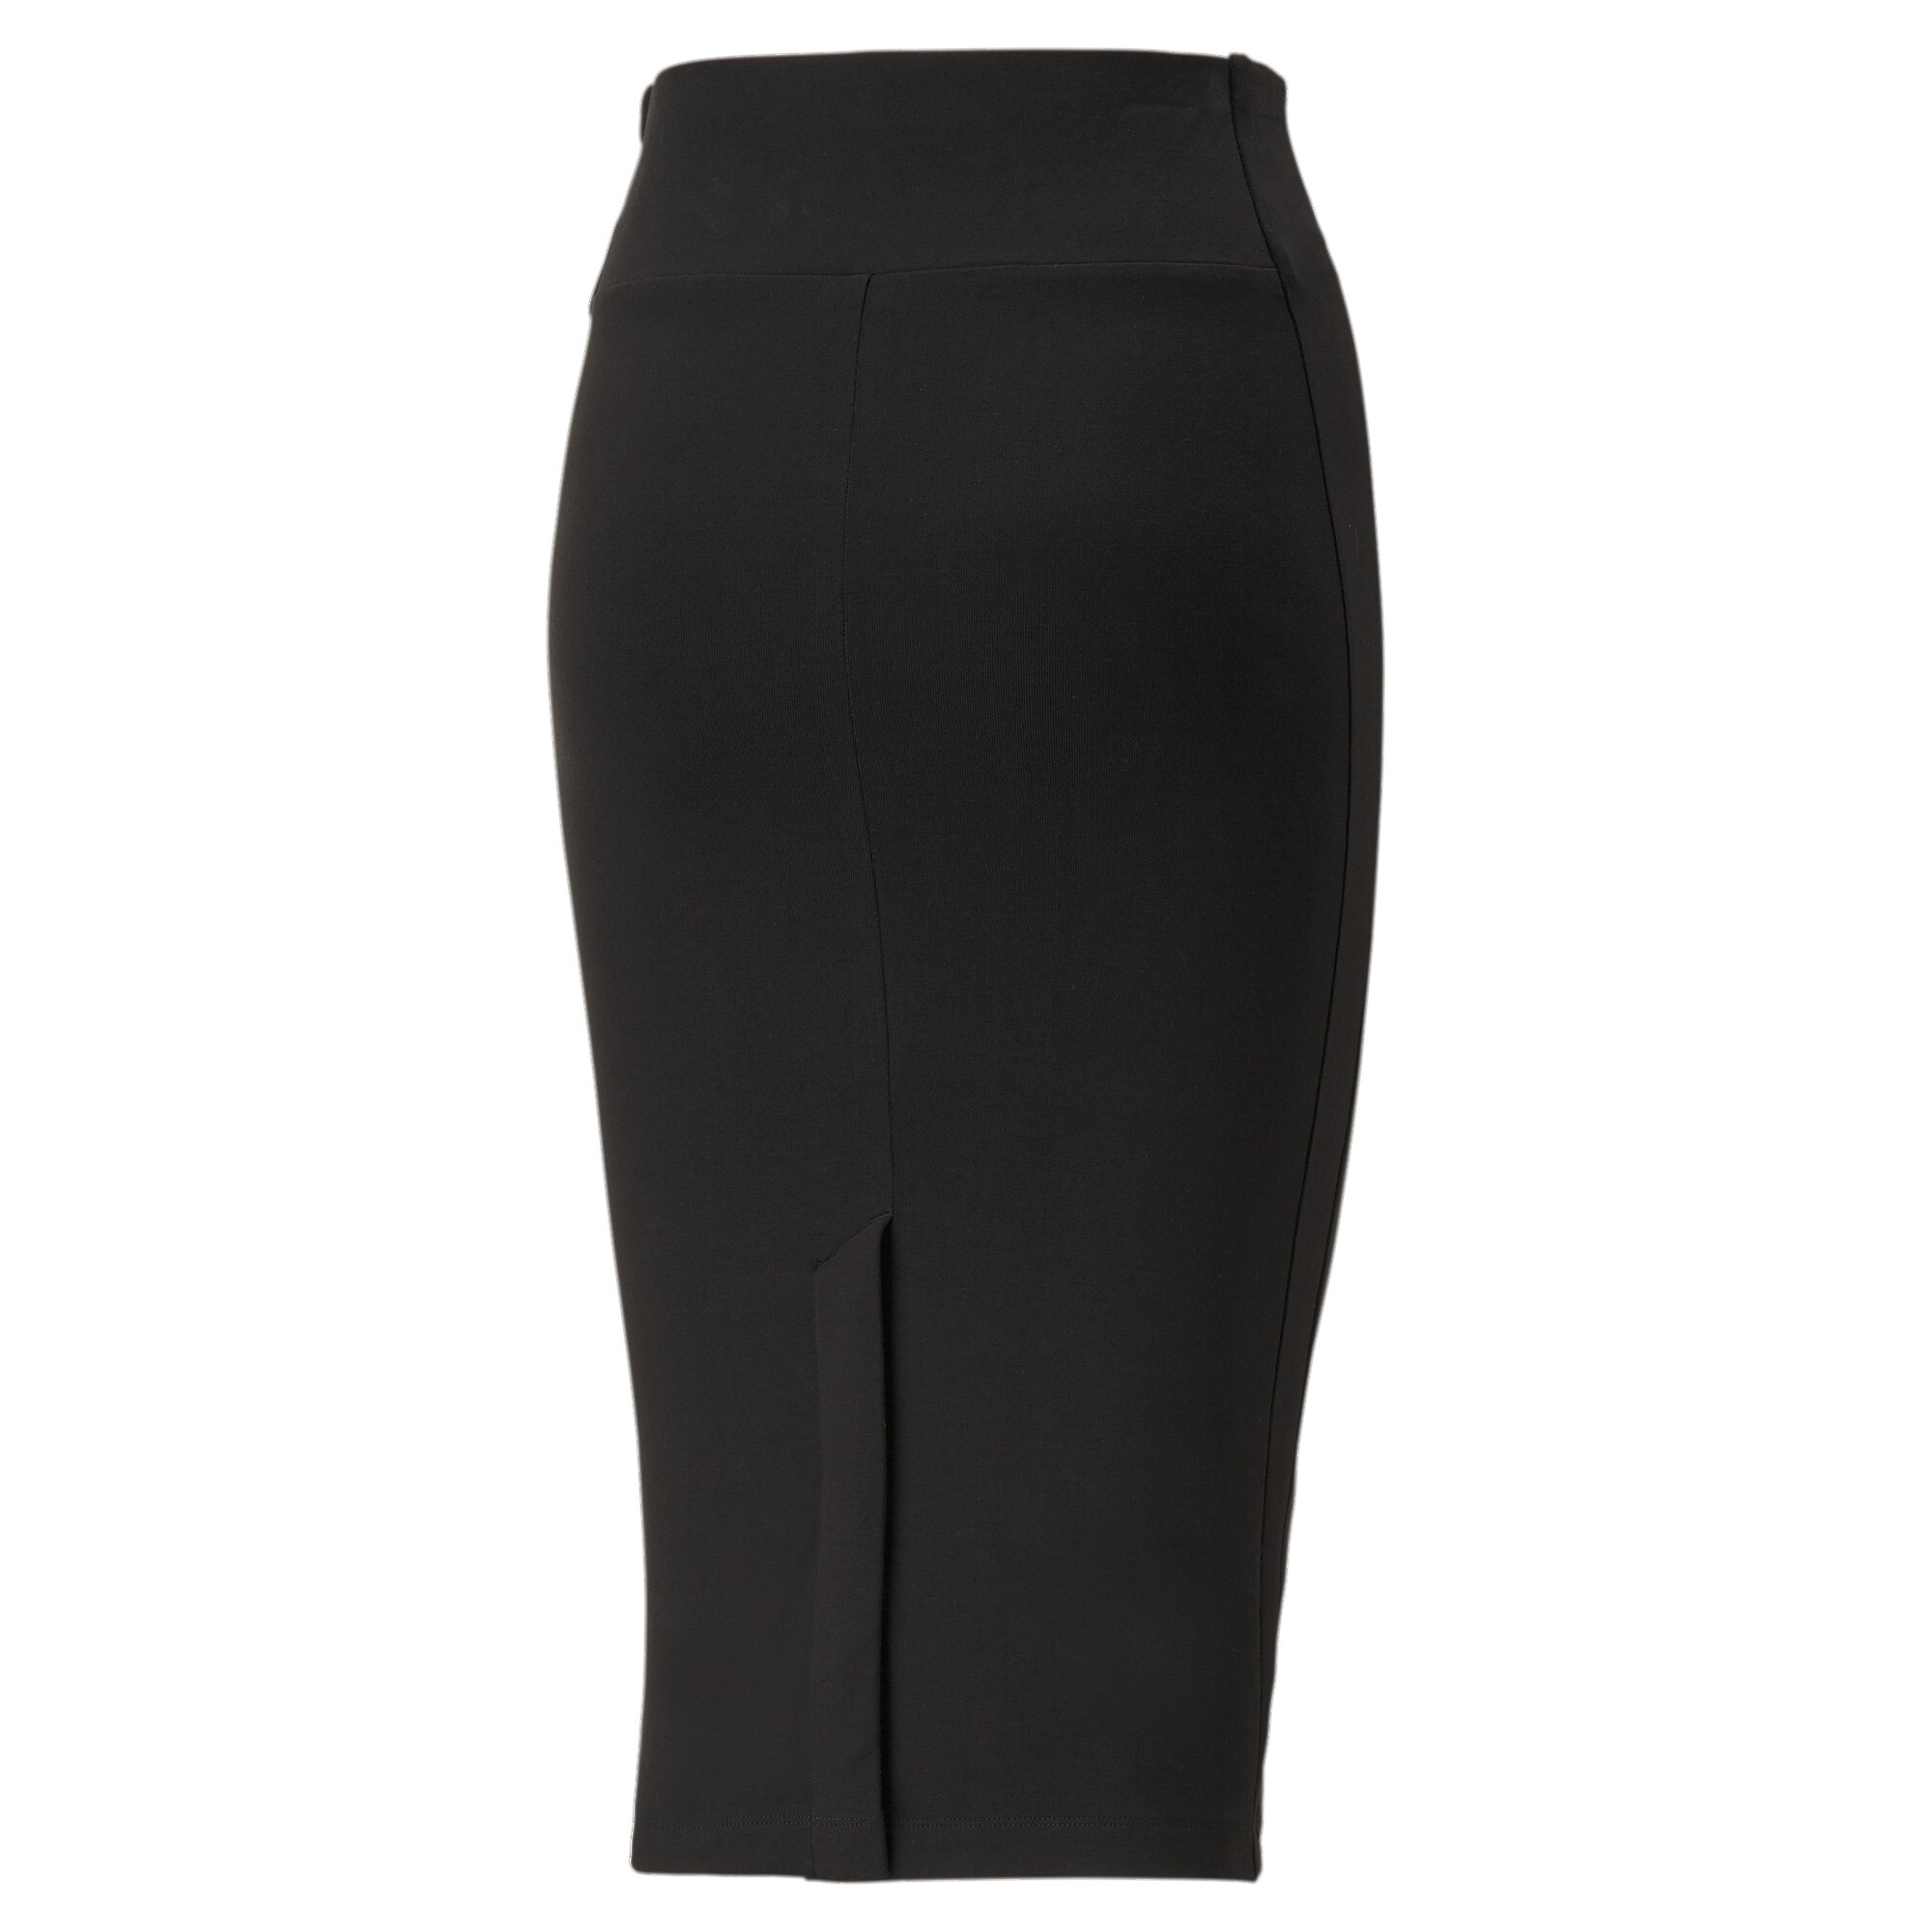 Women's PUMA T7 Long Skirt Women In Black, Size XS